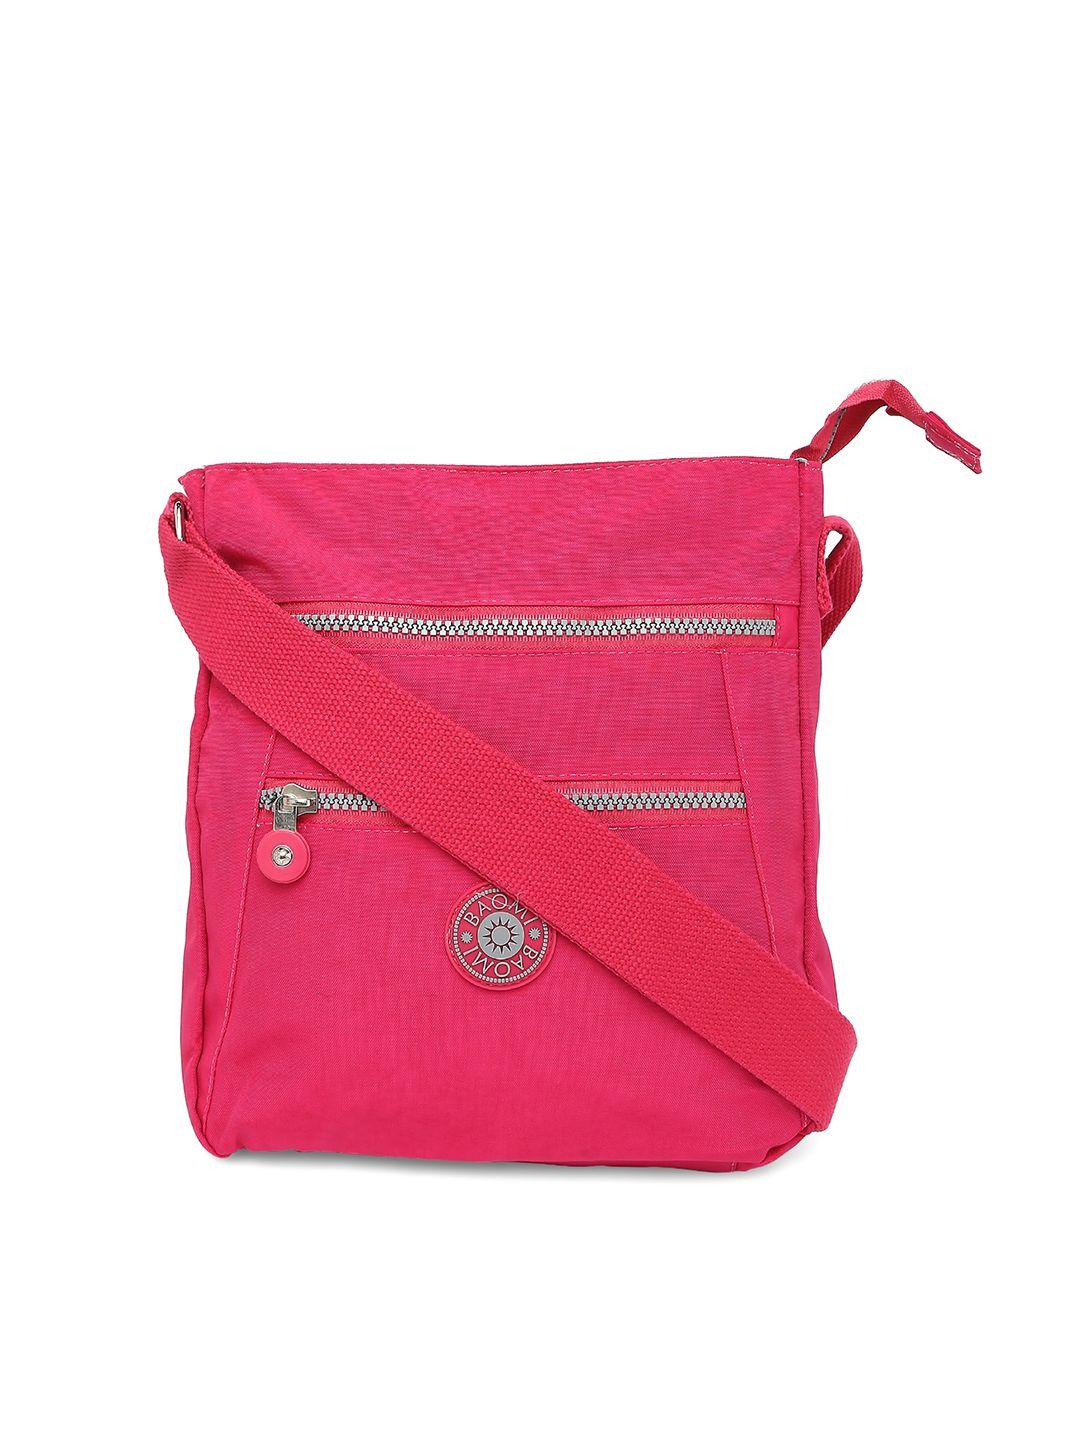 baomi pink structured sling bag